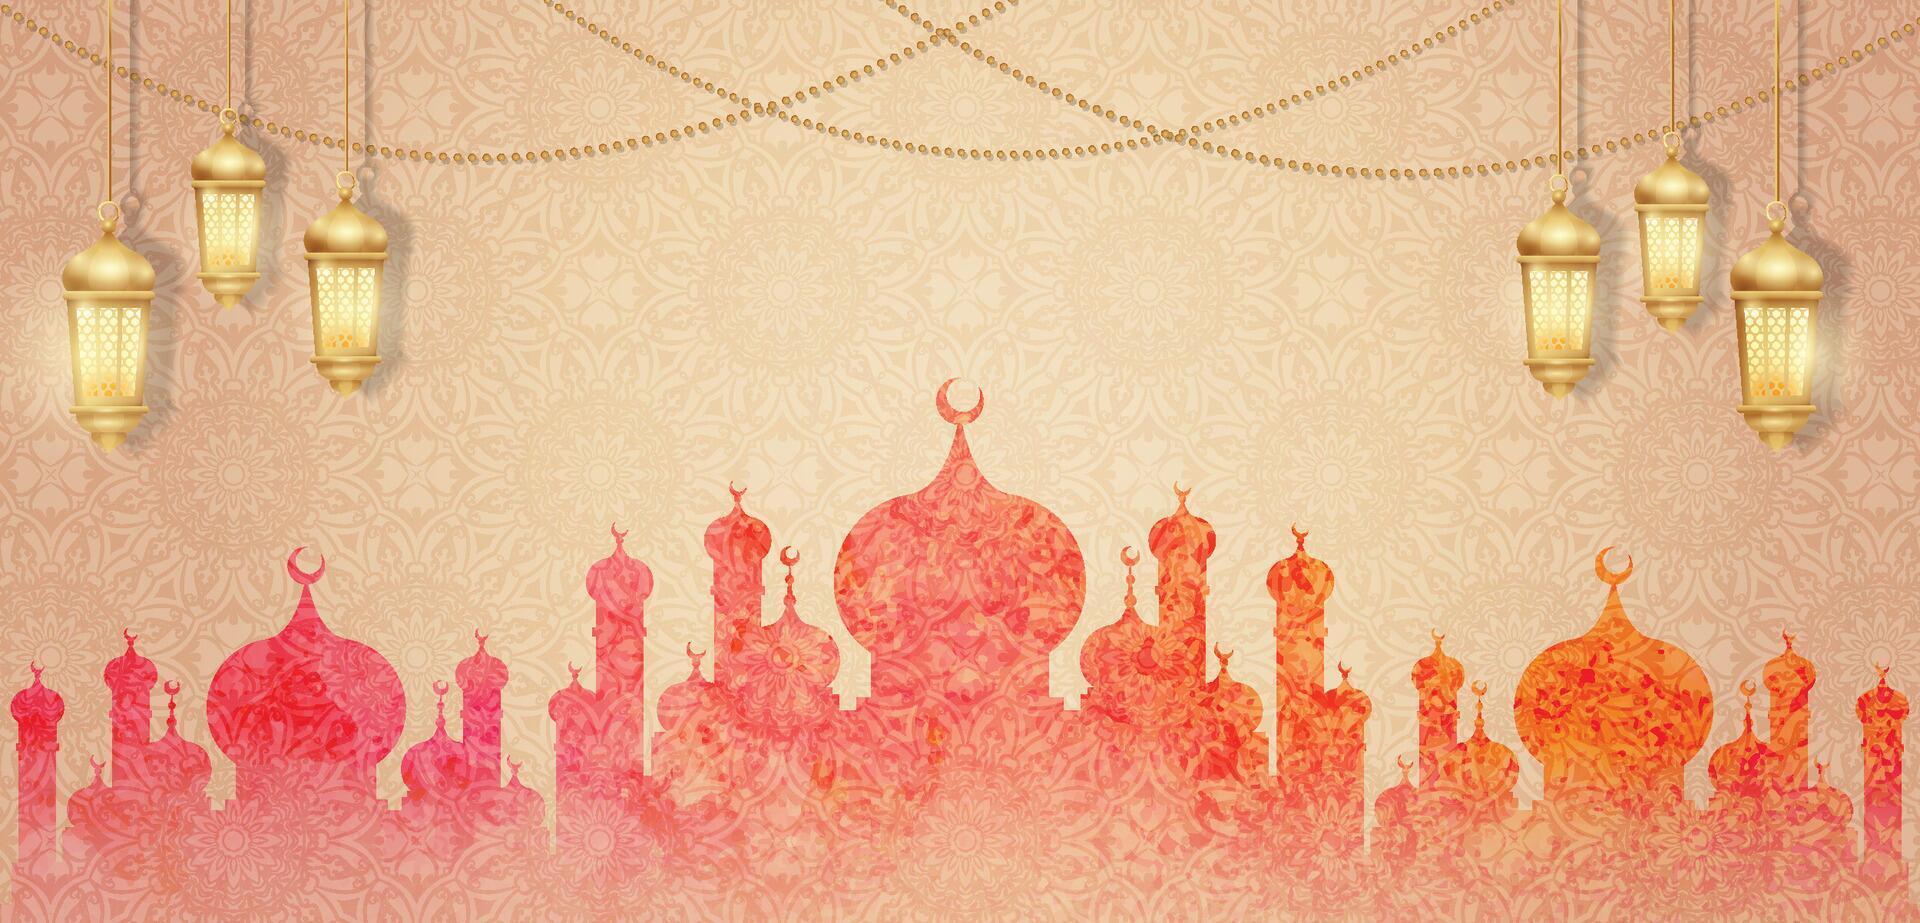 islámico horizontal bandera con silueta mezquita y oro linterna ornamento vector